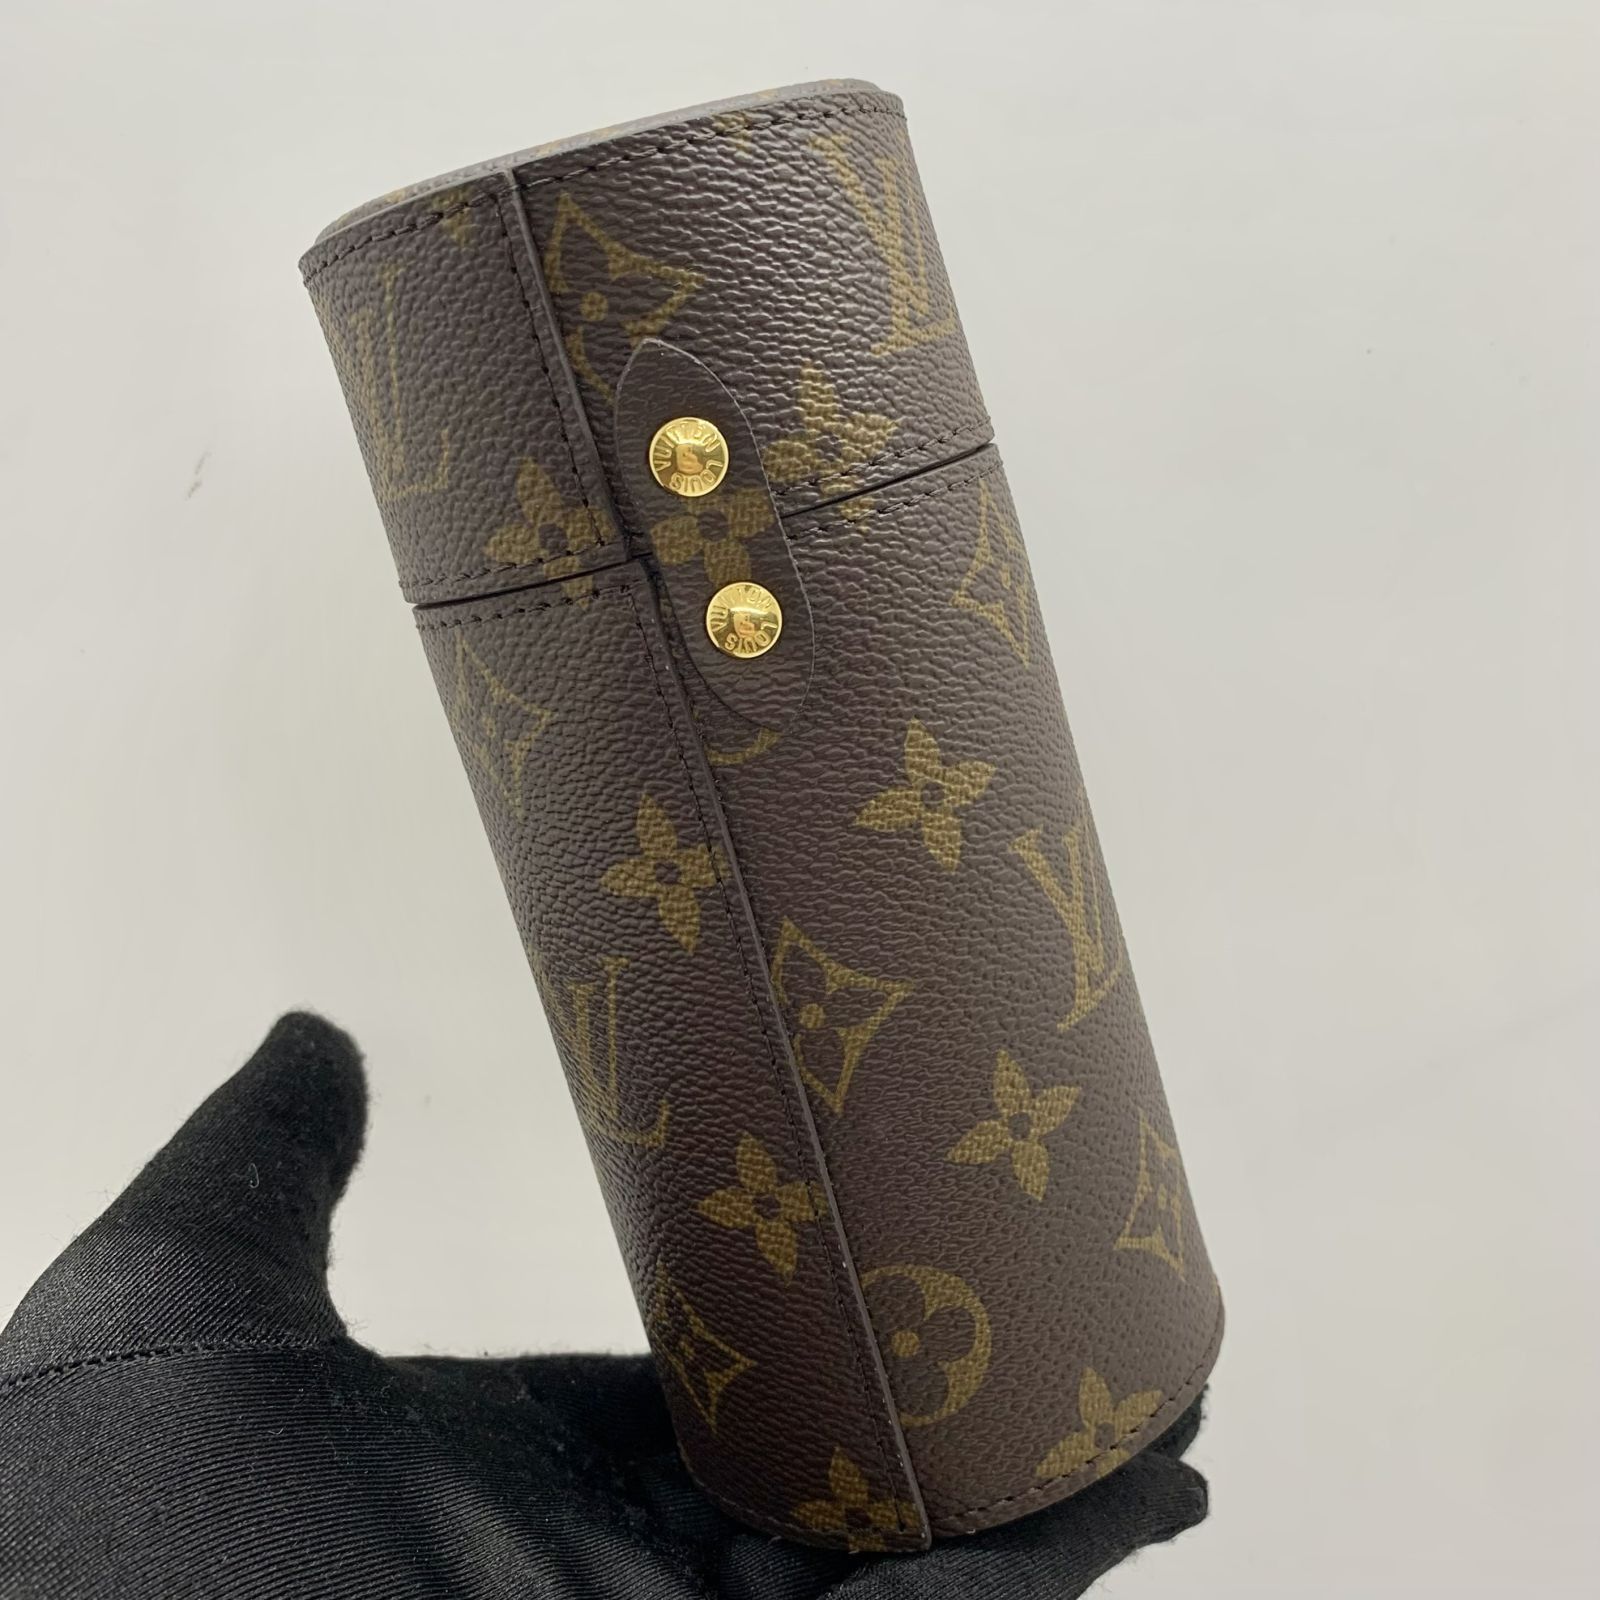 Louis Vuitton Travel Case Epi 200ML White in Epi Leather with Gold